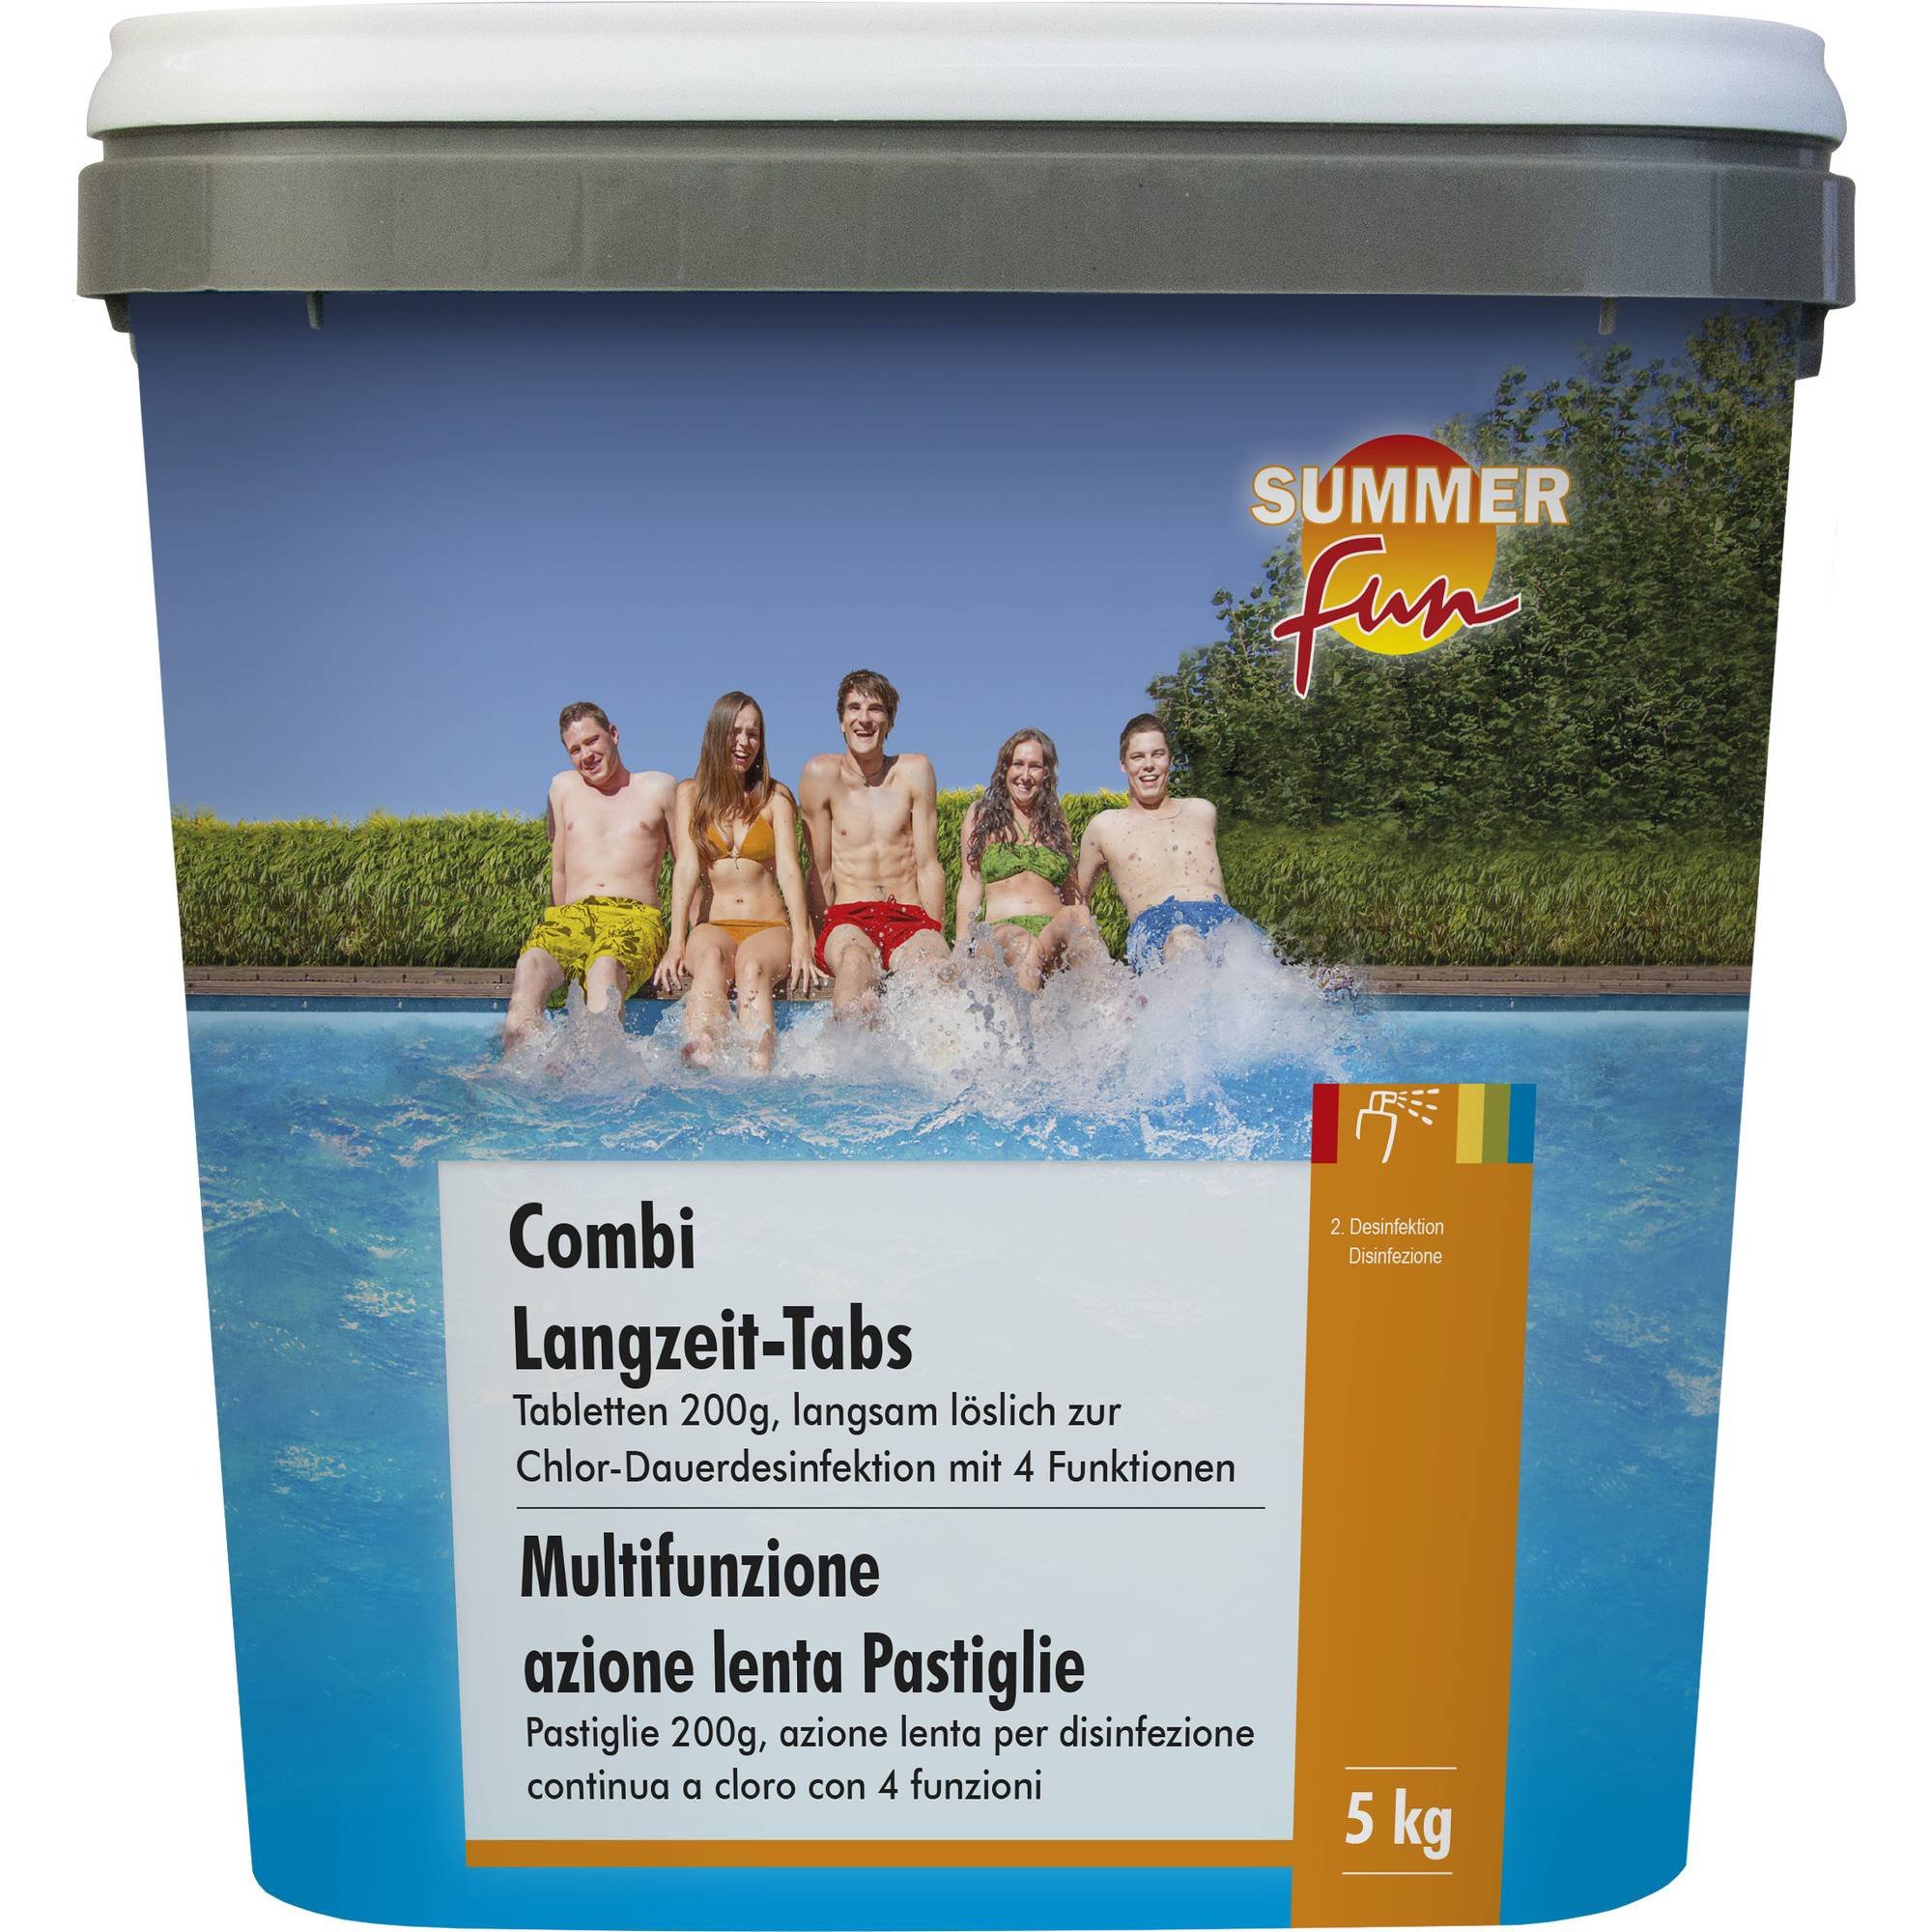 Summer Fun - Combi Langzeit-Tabs - 200g Tabletten, 5 kg